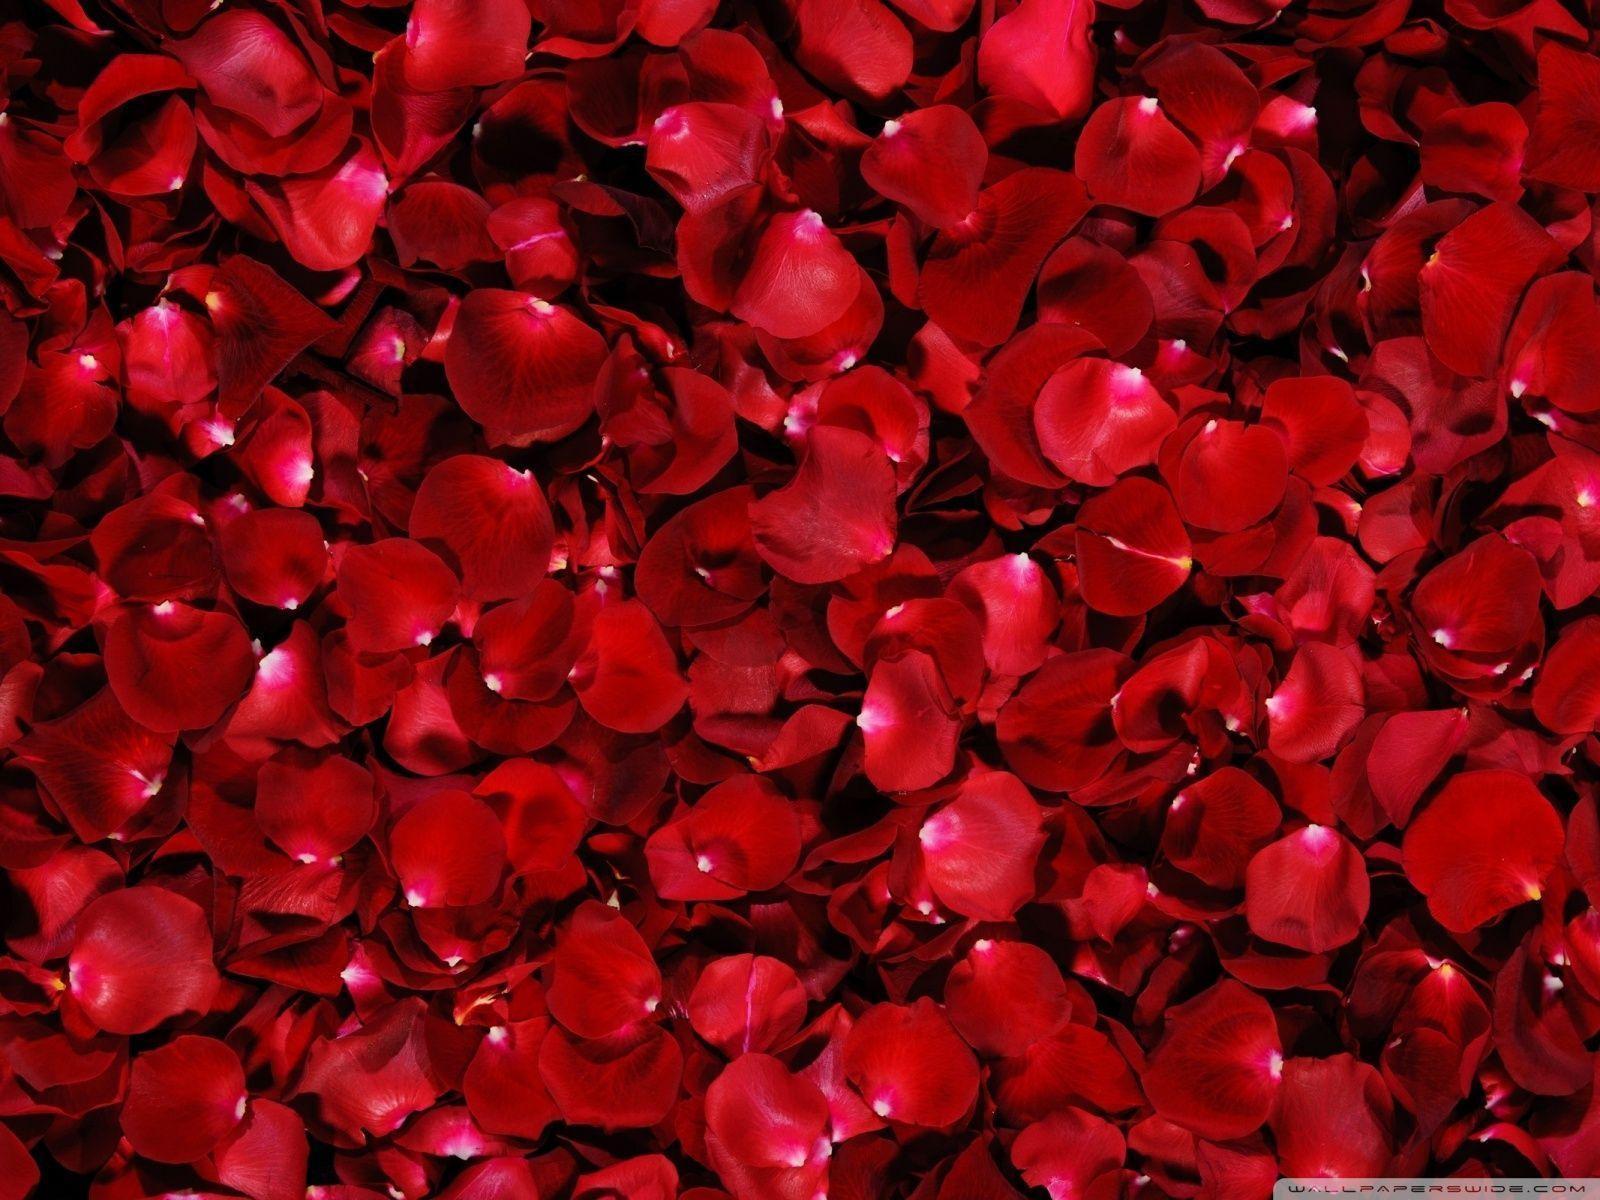 Wallpaper For > Red Roses Wallpaper For Desktop